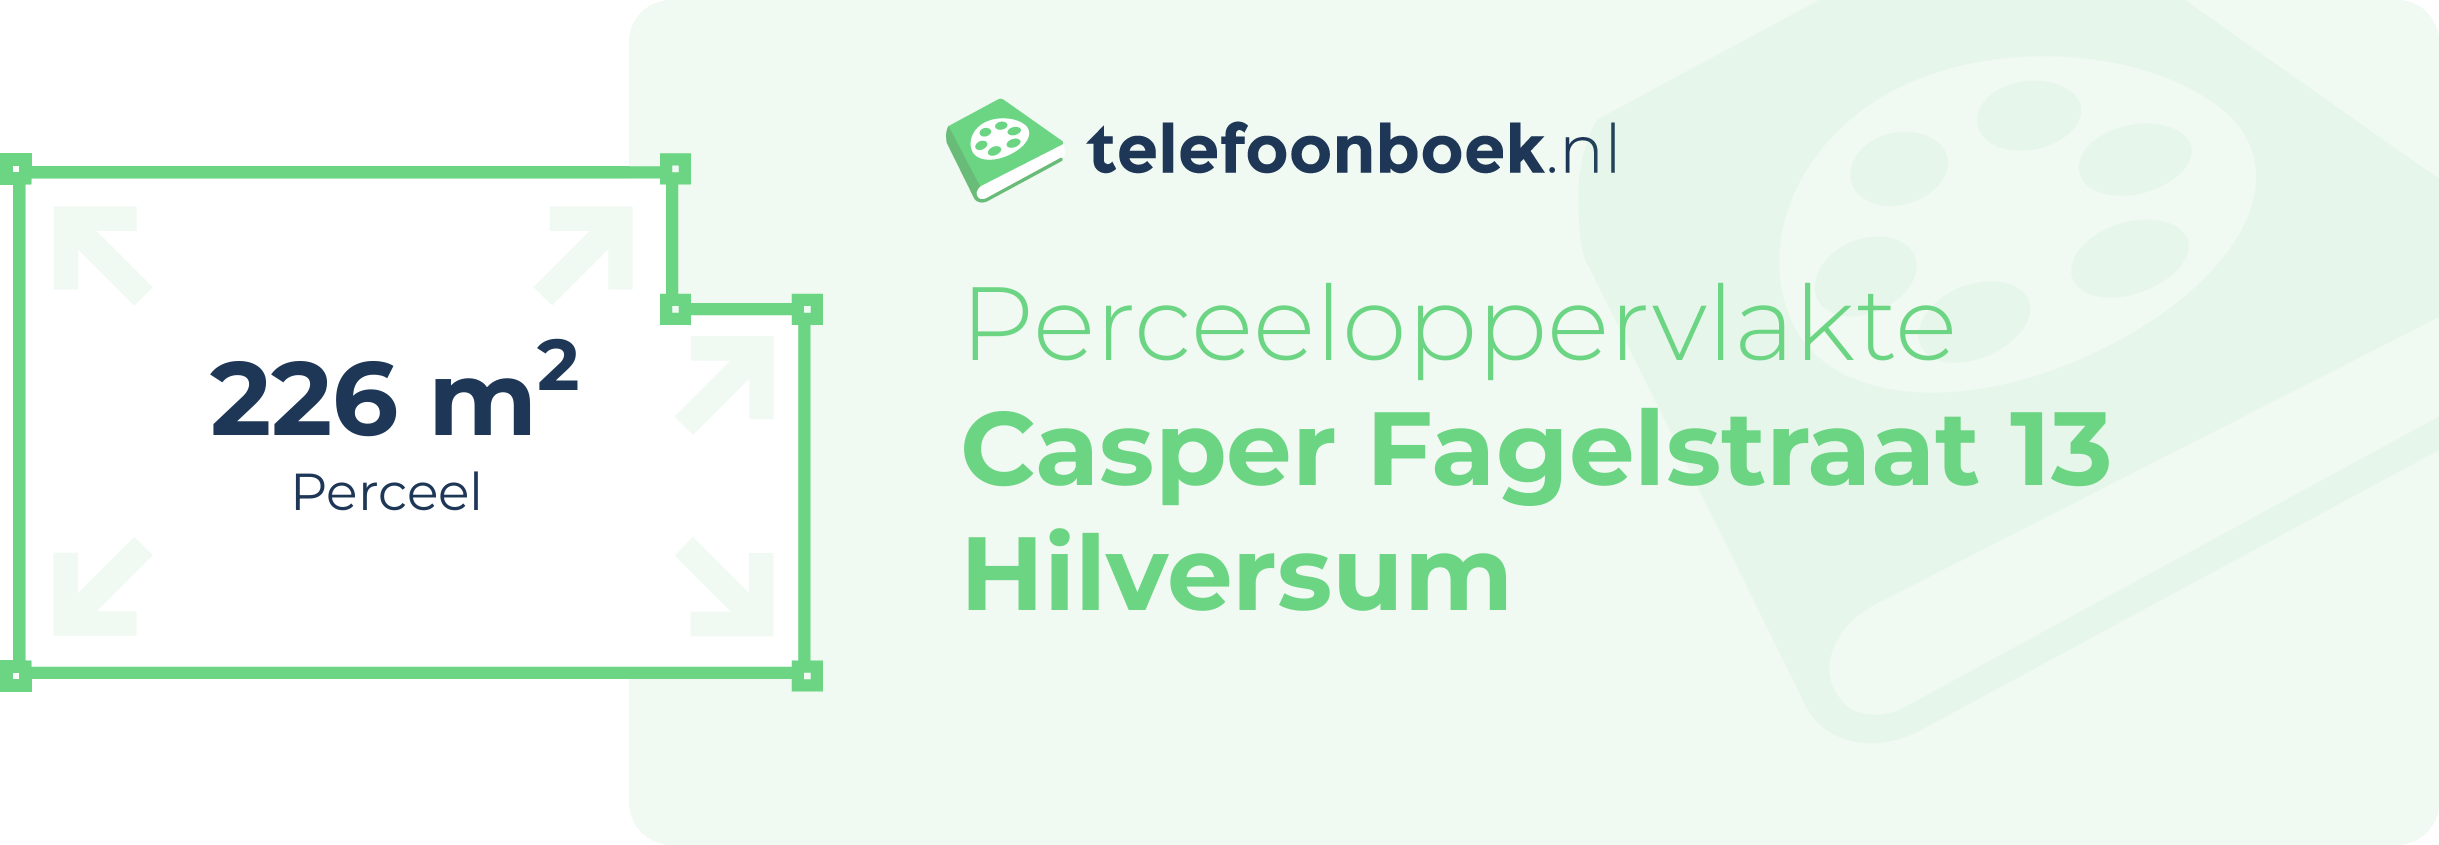 Perceeloppervlakte Casper Fagelstraat 13 Hilversum